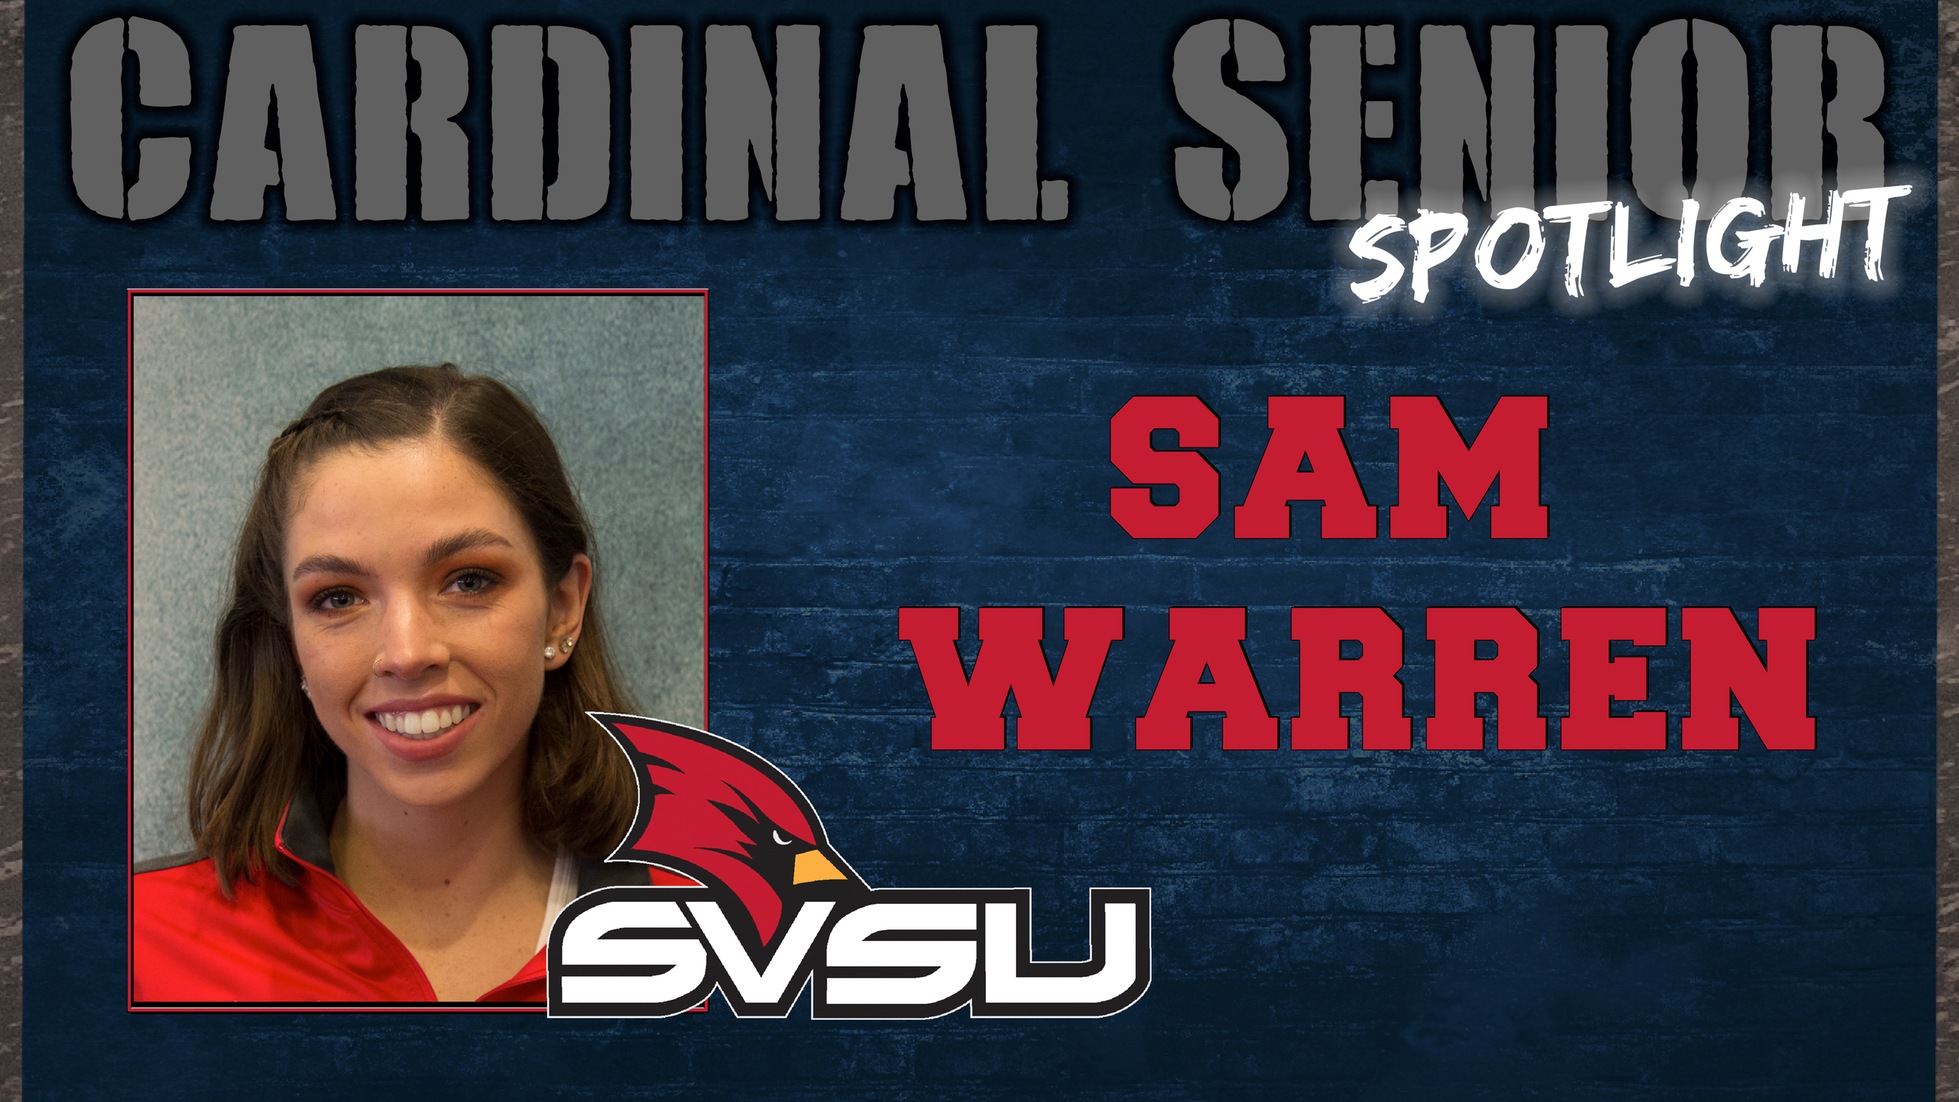 SVSU Cardinal Senior Spotlight - Sam Warren